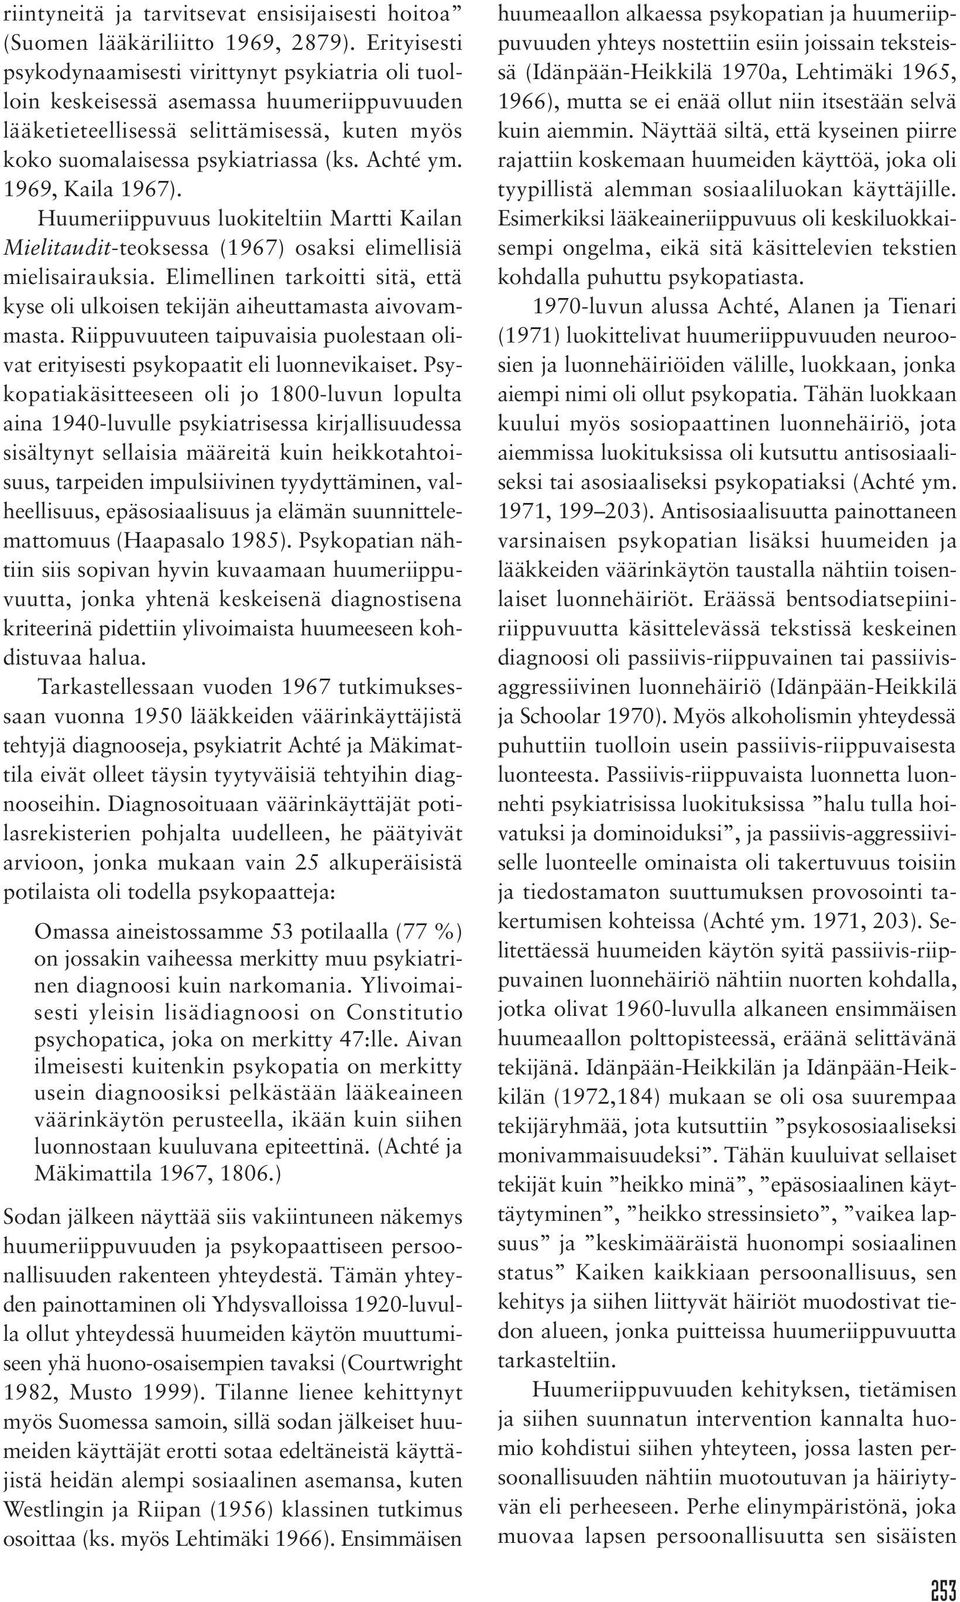 1969, Kaila 1967). Huumeriippuvuus luokiteltiin Martti Kailan Mielitaudit-teoksessa (1967) osaksi elimellisiä mielisairauksia.